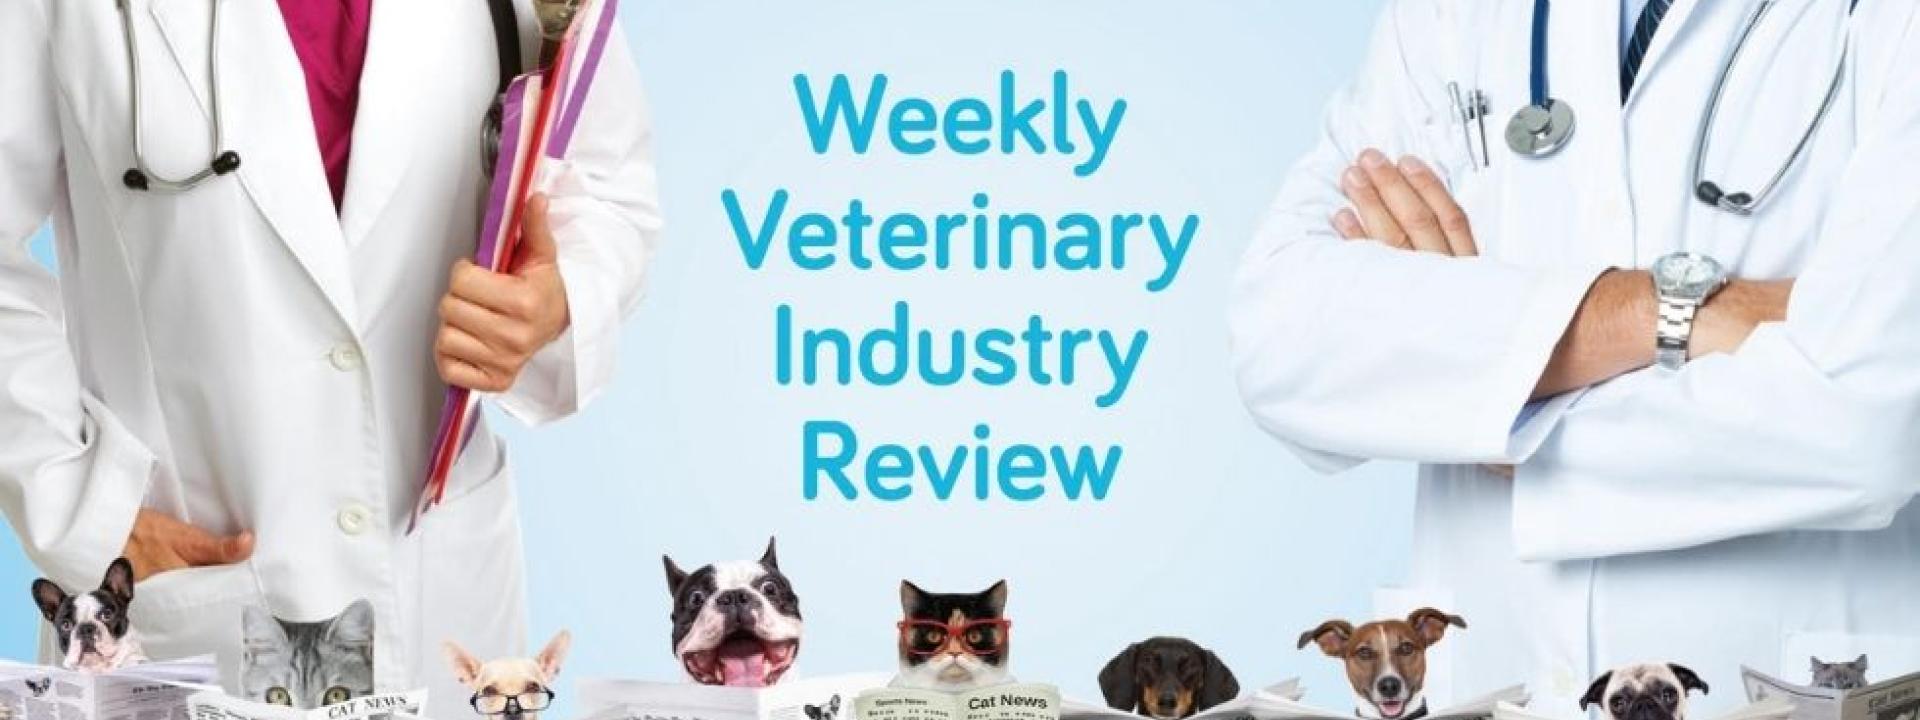 Weekly Veterinary Industry Review by GeniusVeets